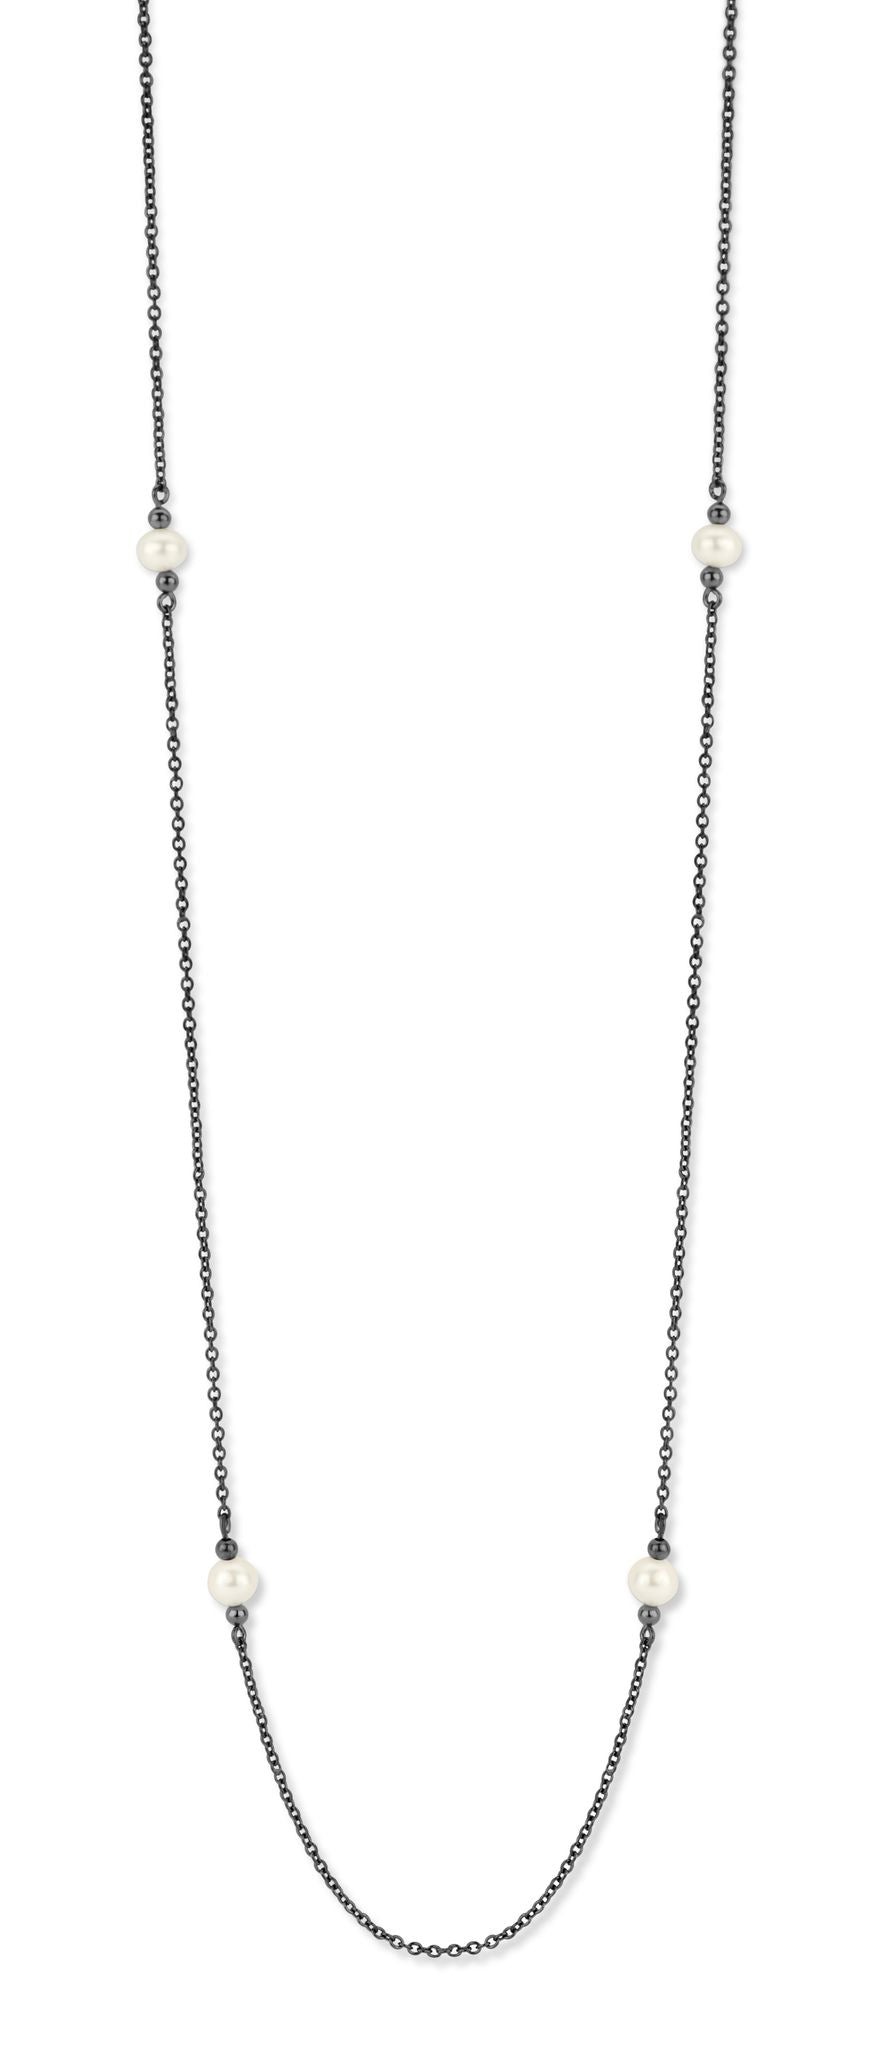 Athena halskæde 60/70 cm - sterlingsølv ruthineret - ferskvandsperler-2